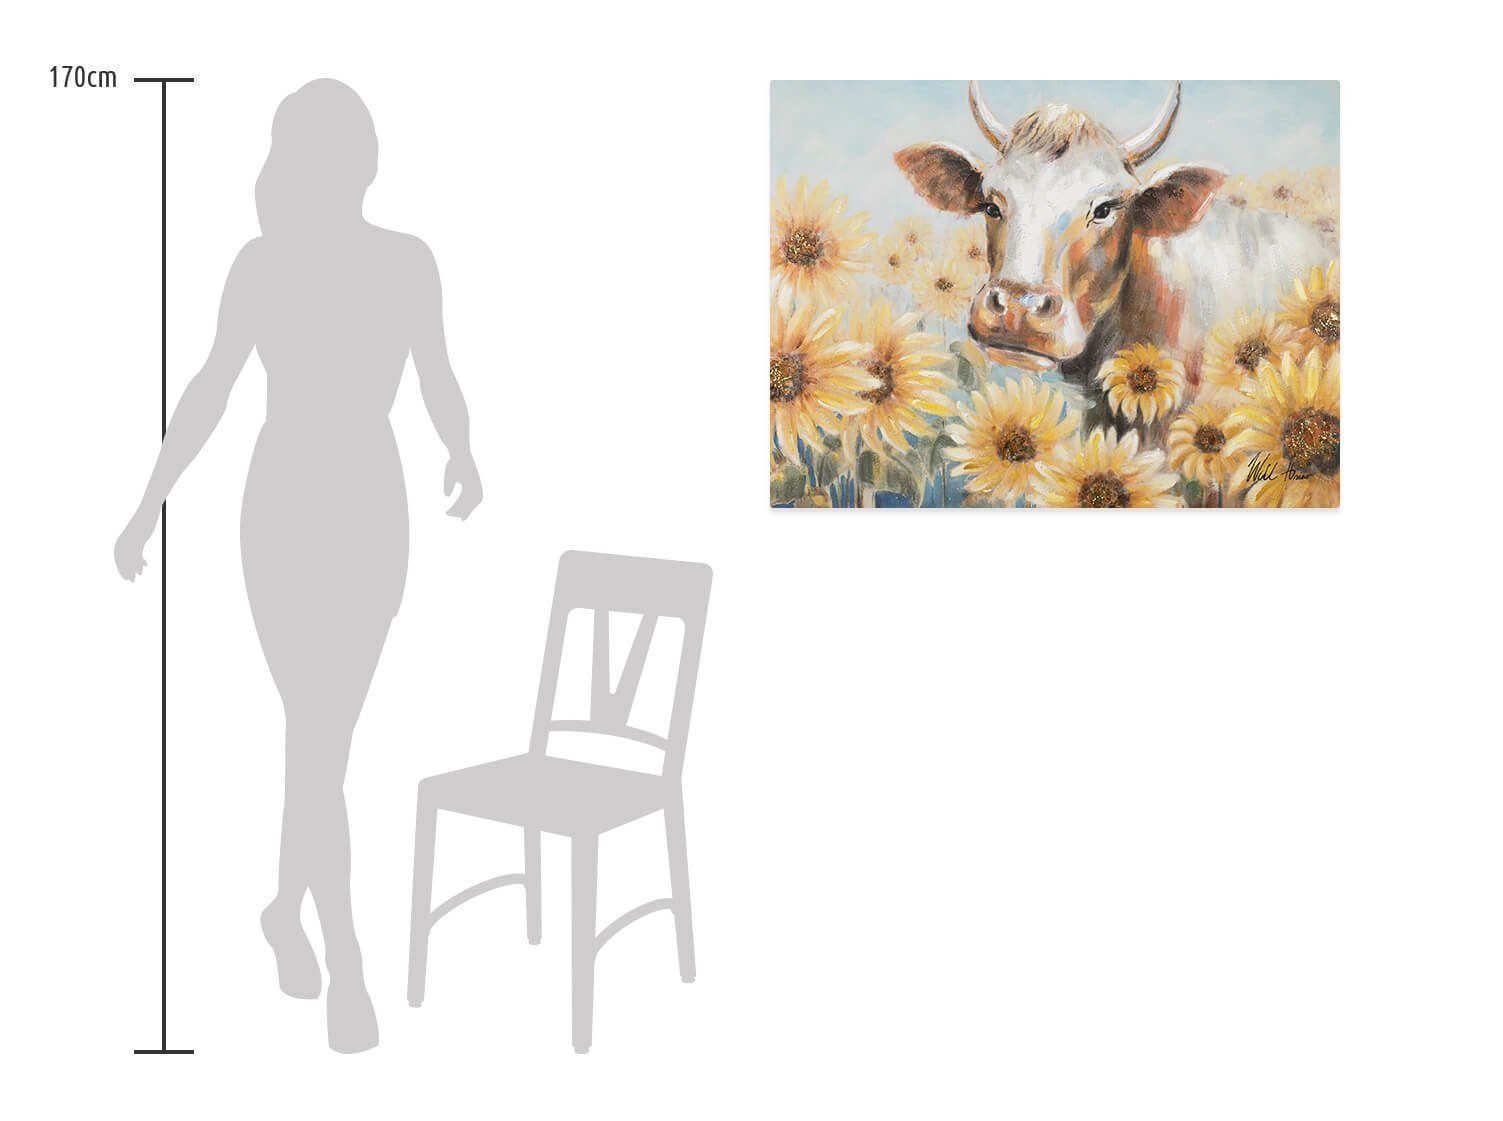 100x75 Harmonie Wandbild 100% cm, Leinwandbild HANDGEMALT Gemälde der Natur Wohnzimmer KUNSTLOFT